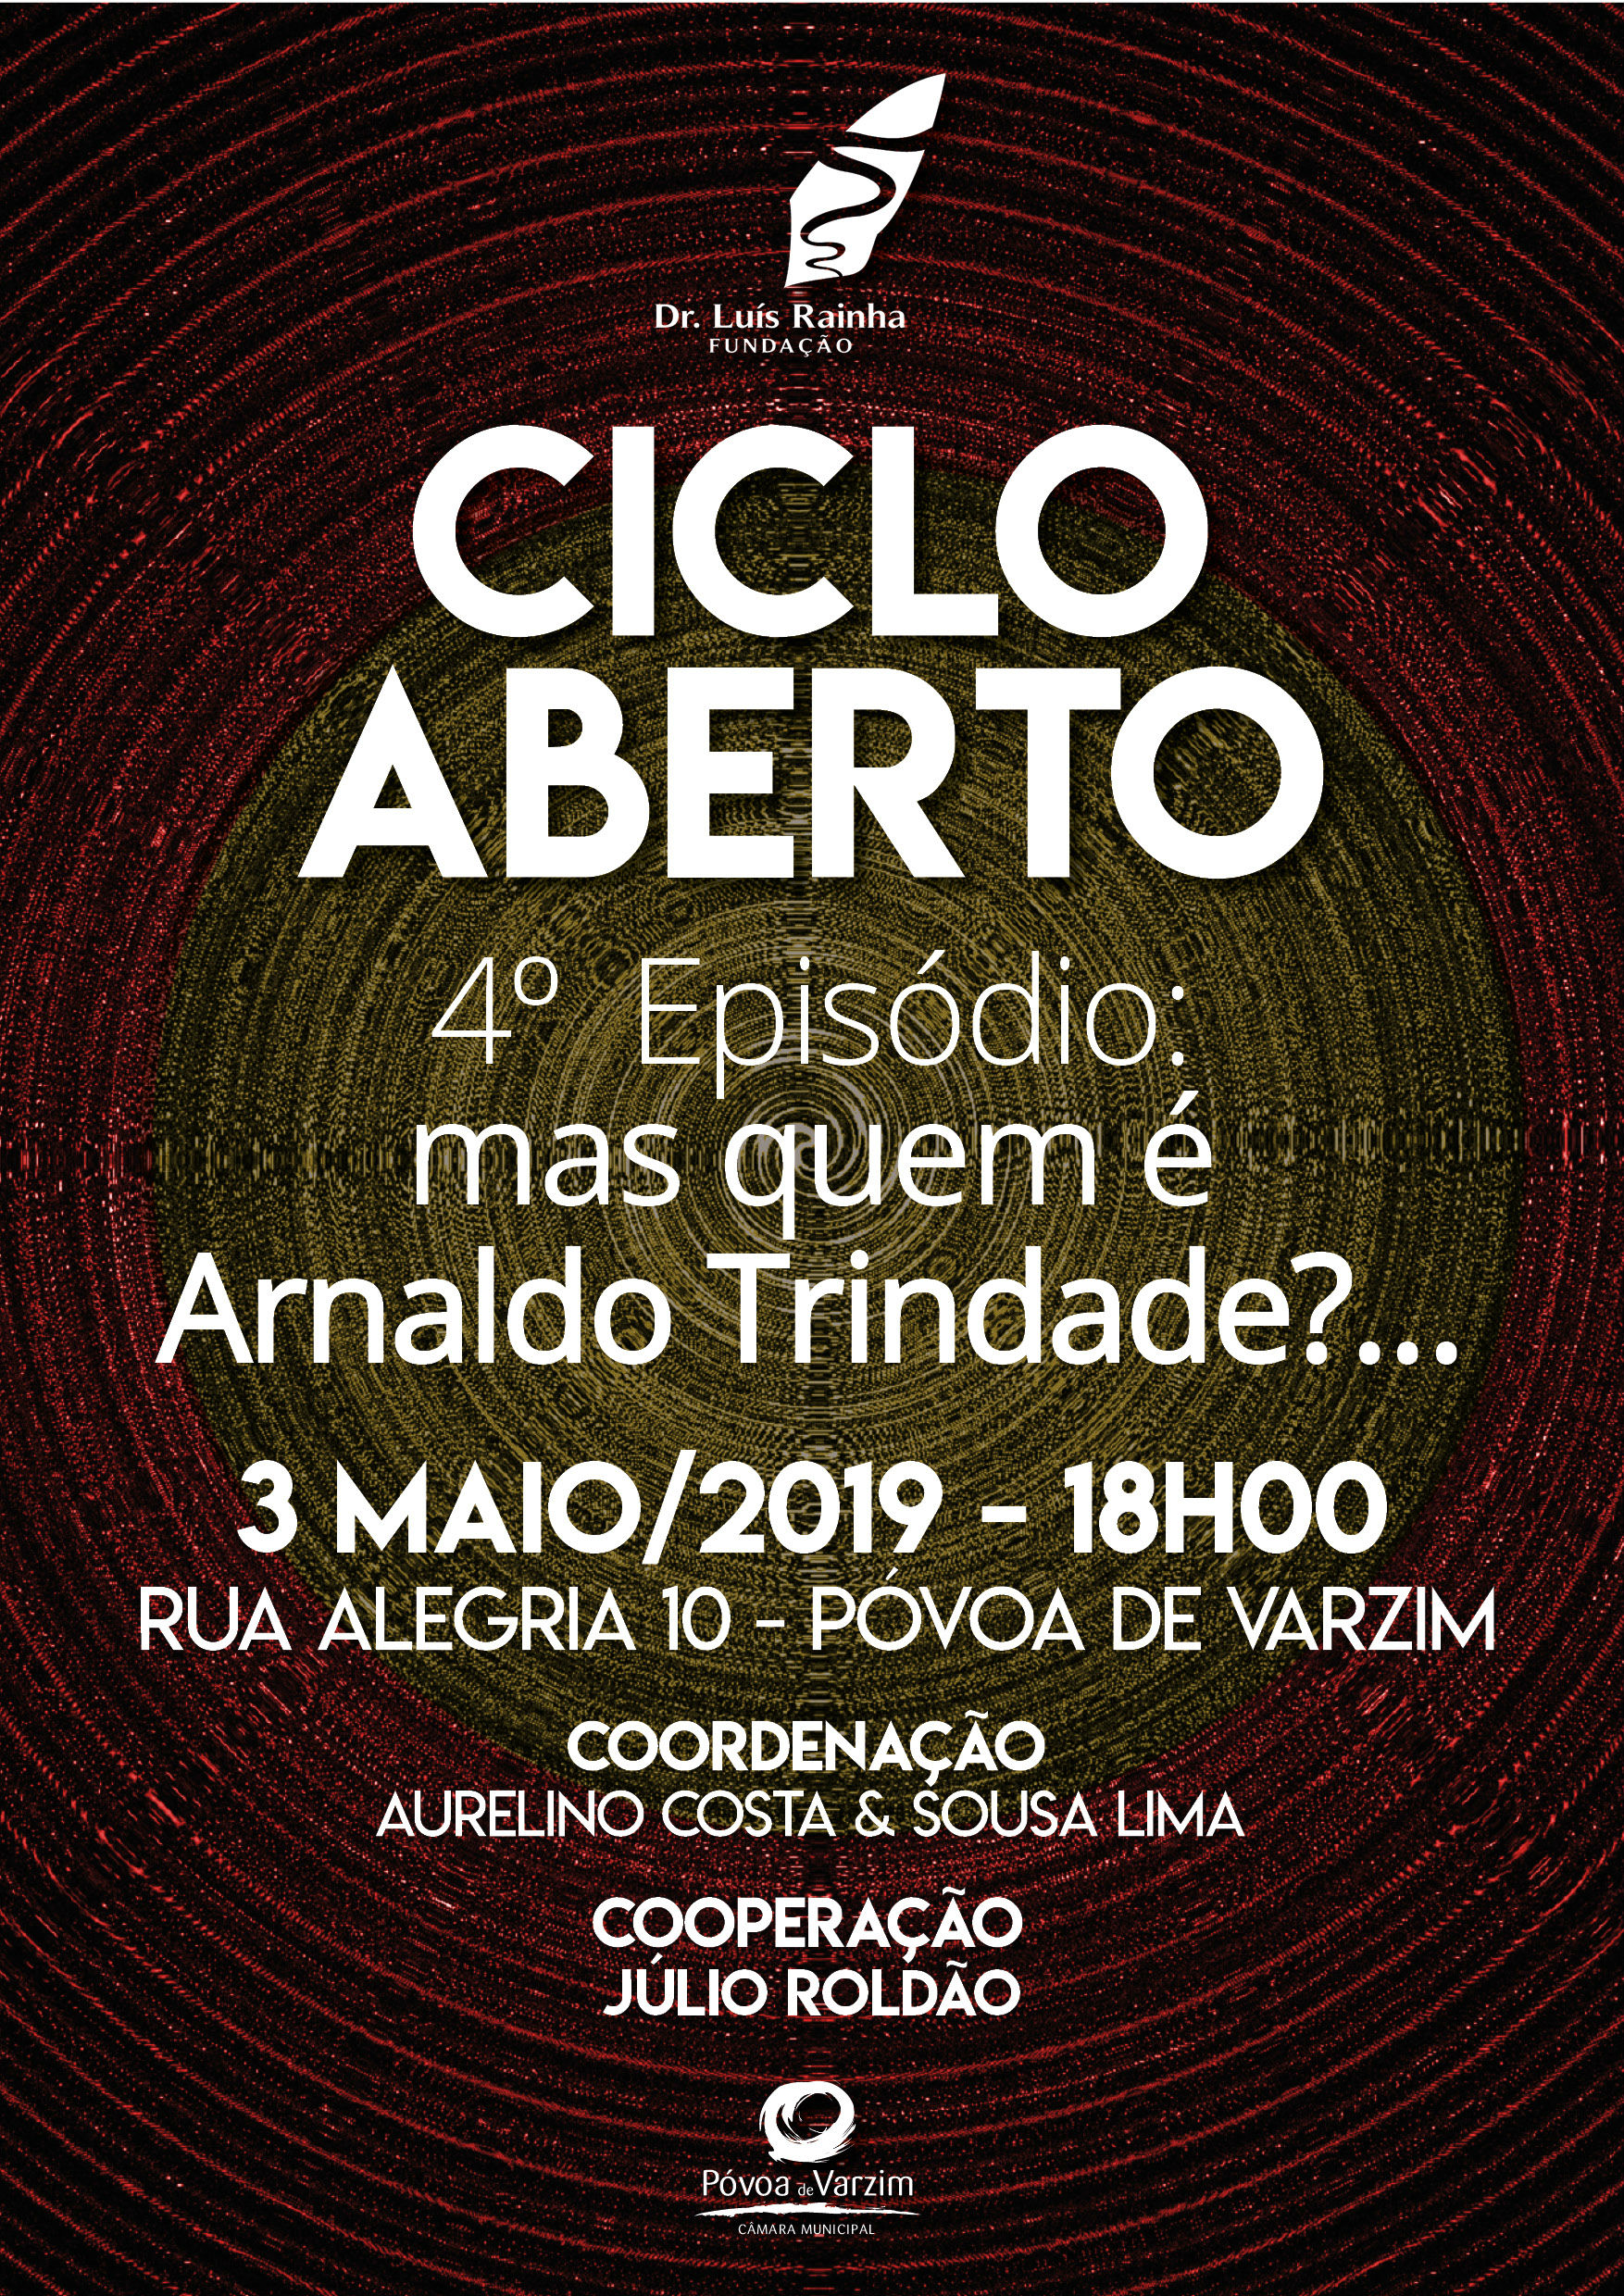 Ciclo Aberto 4º Episódio: "Mas quem é Arnaldo Trindade?"